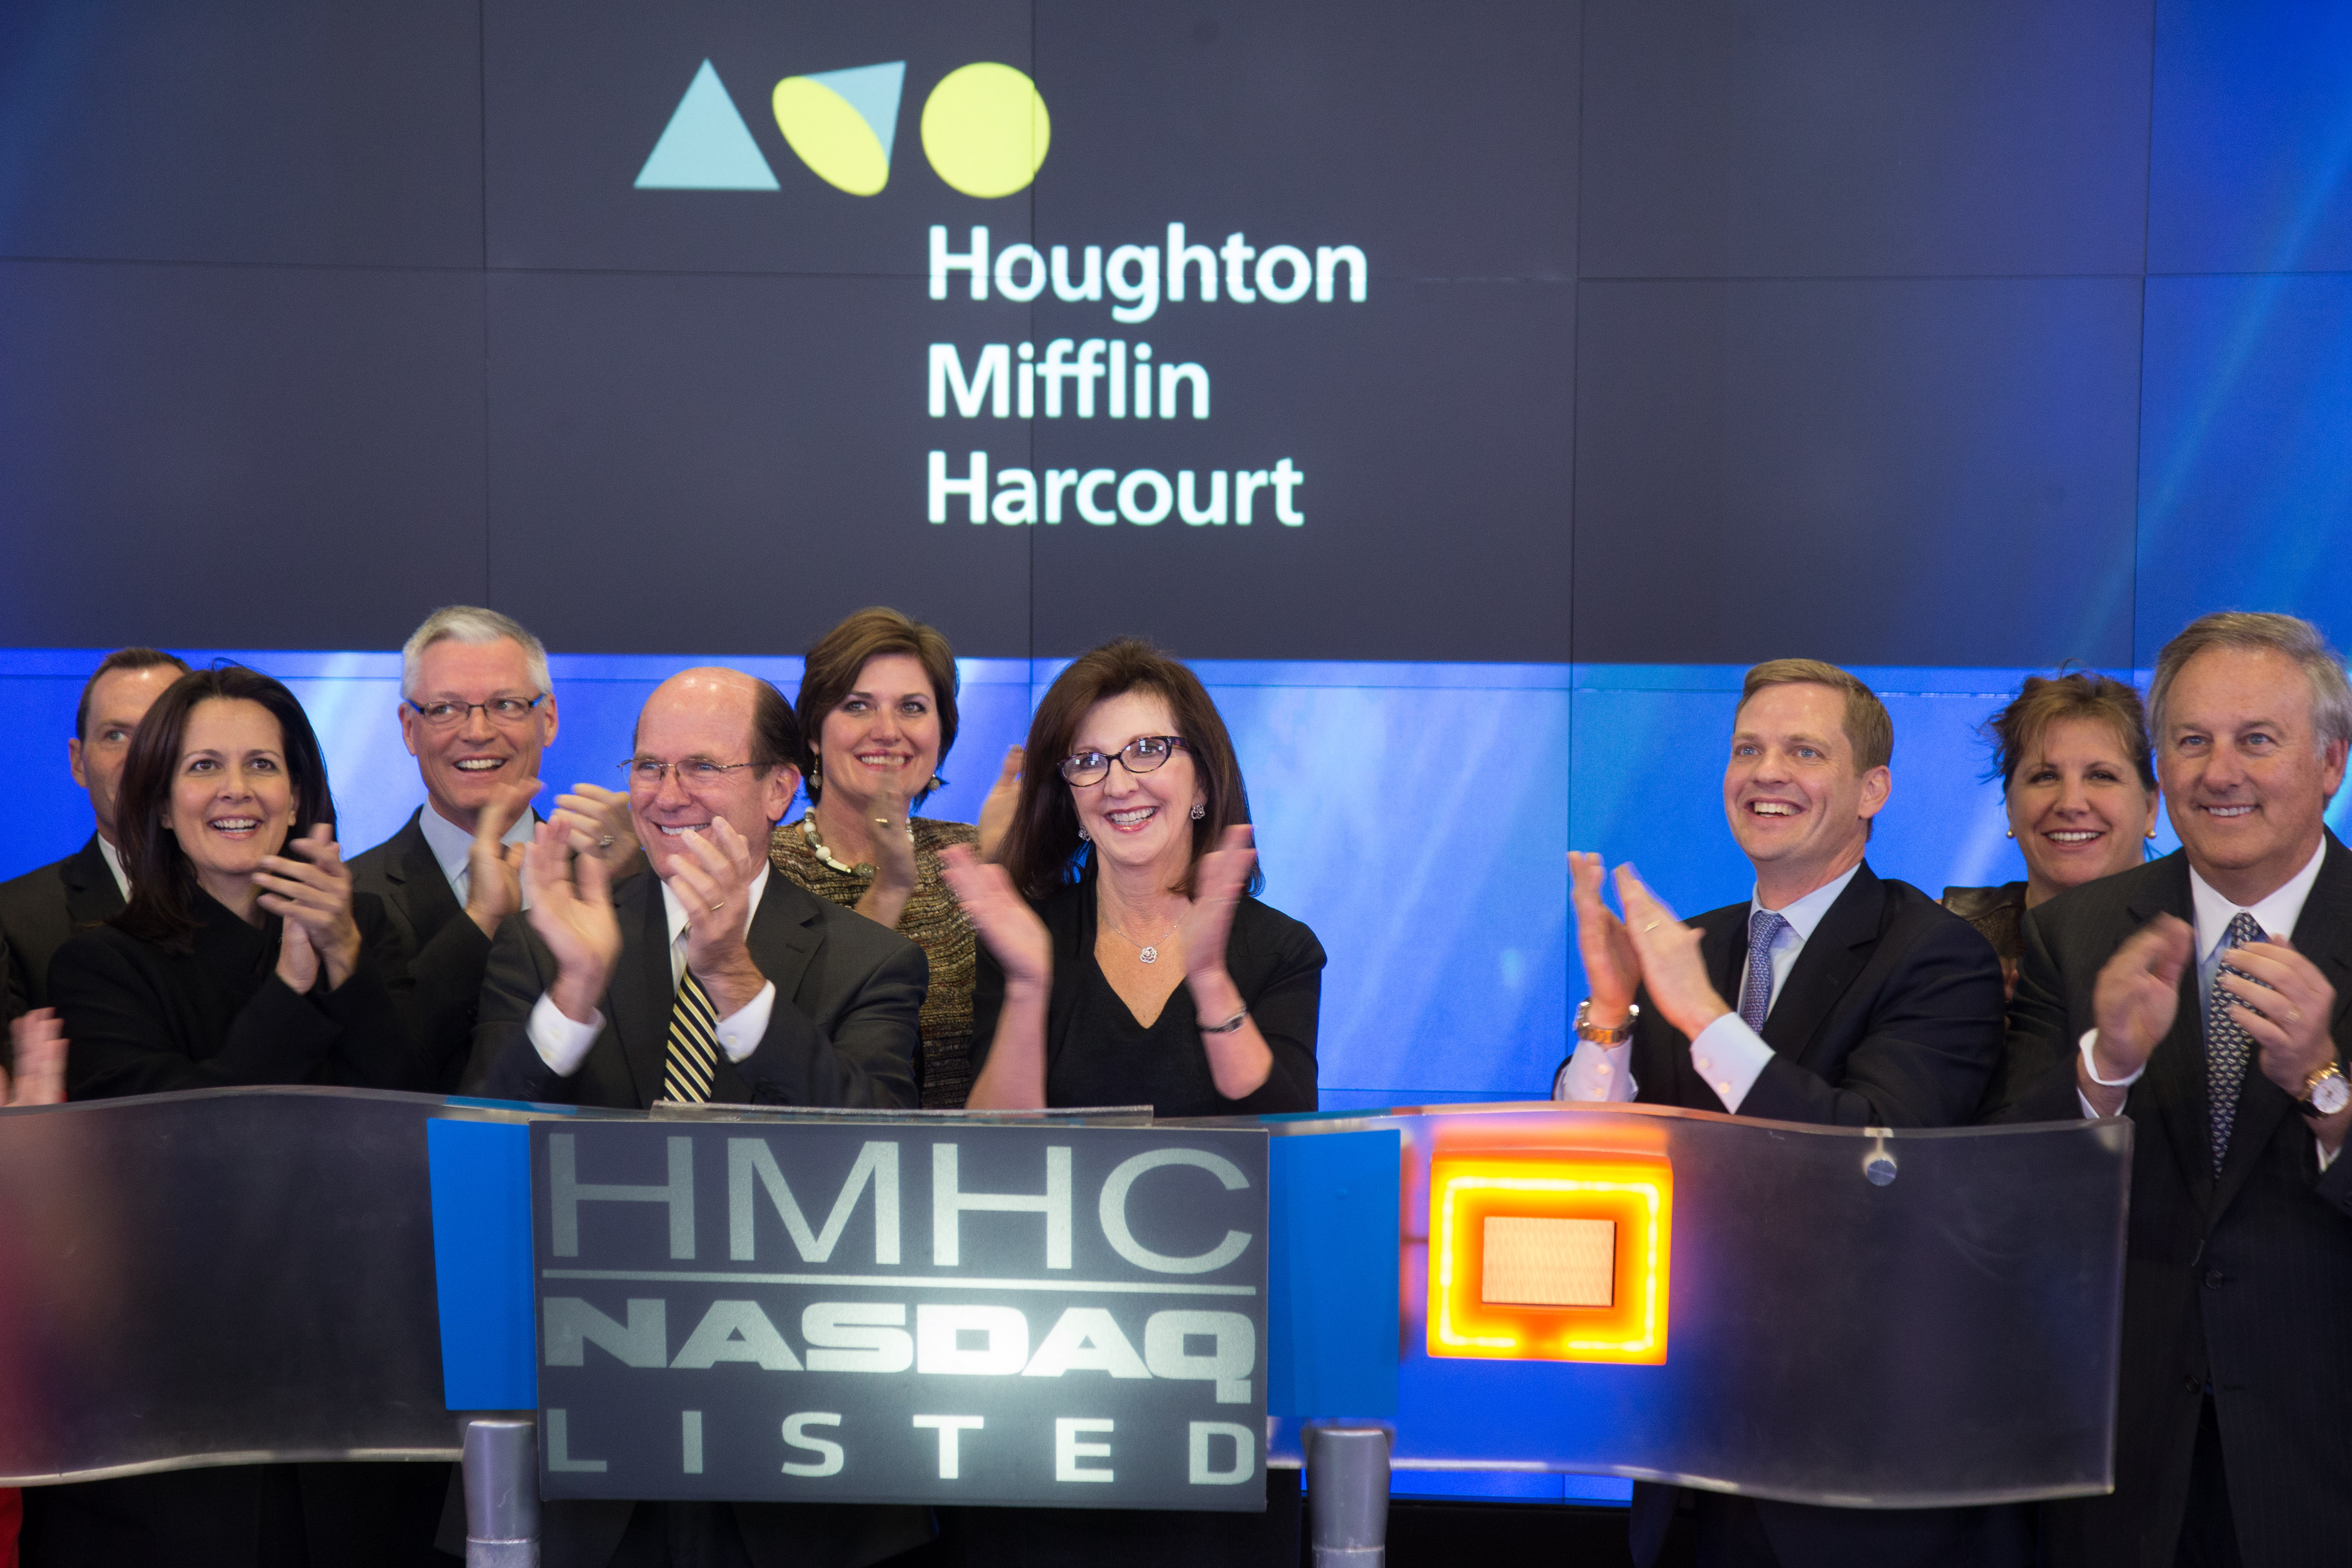 NASDAQ Welcomes Houghton Mifflin Harcourt